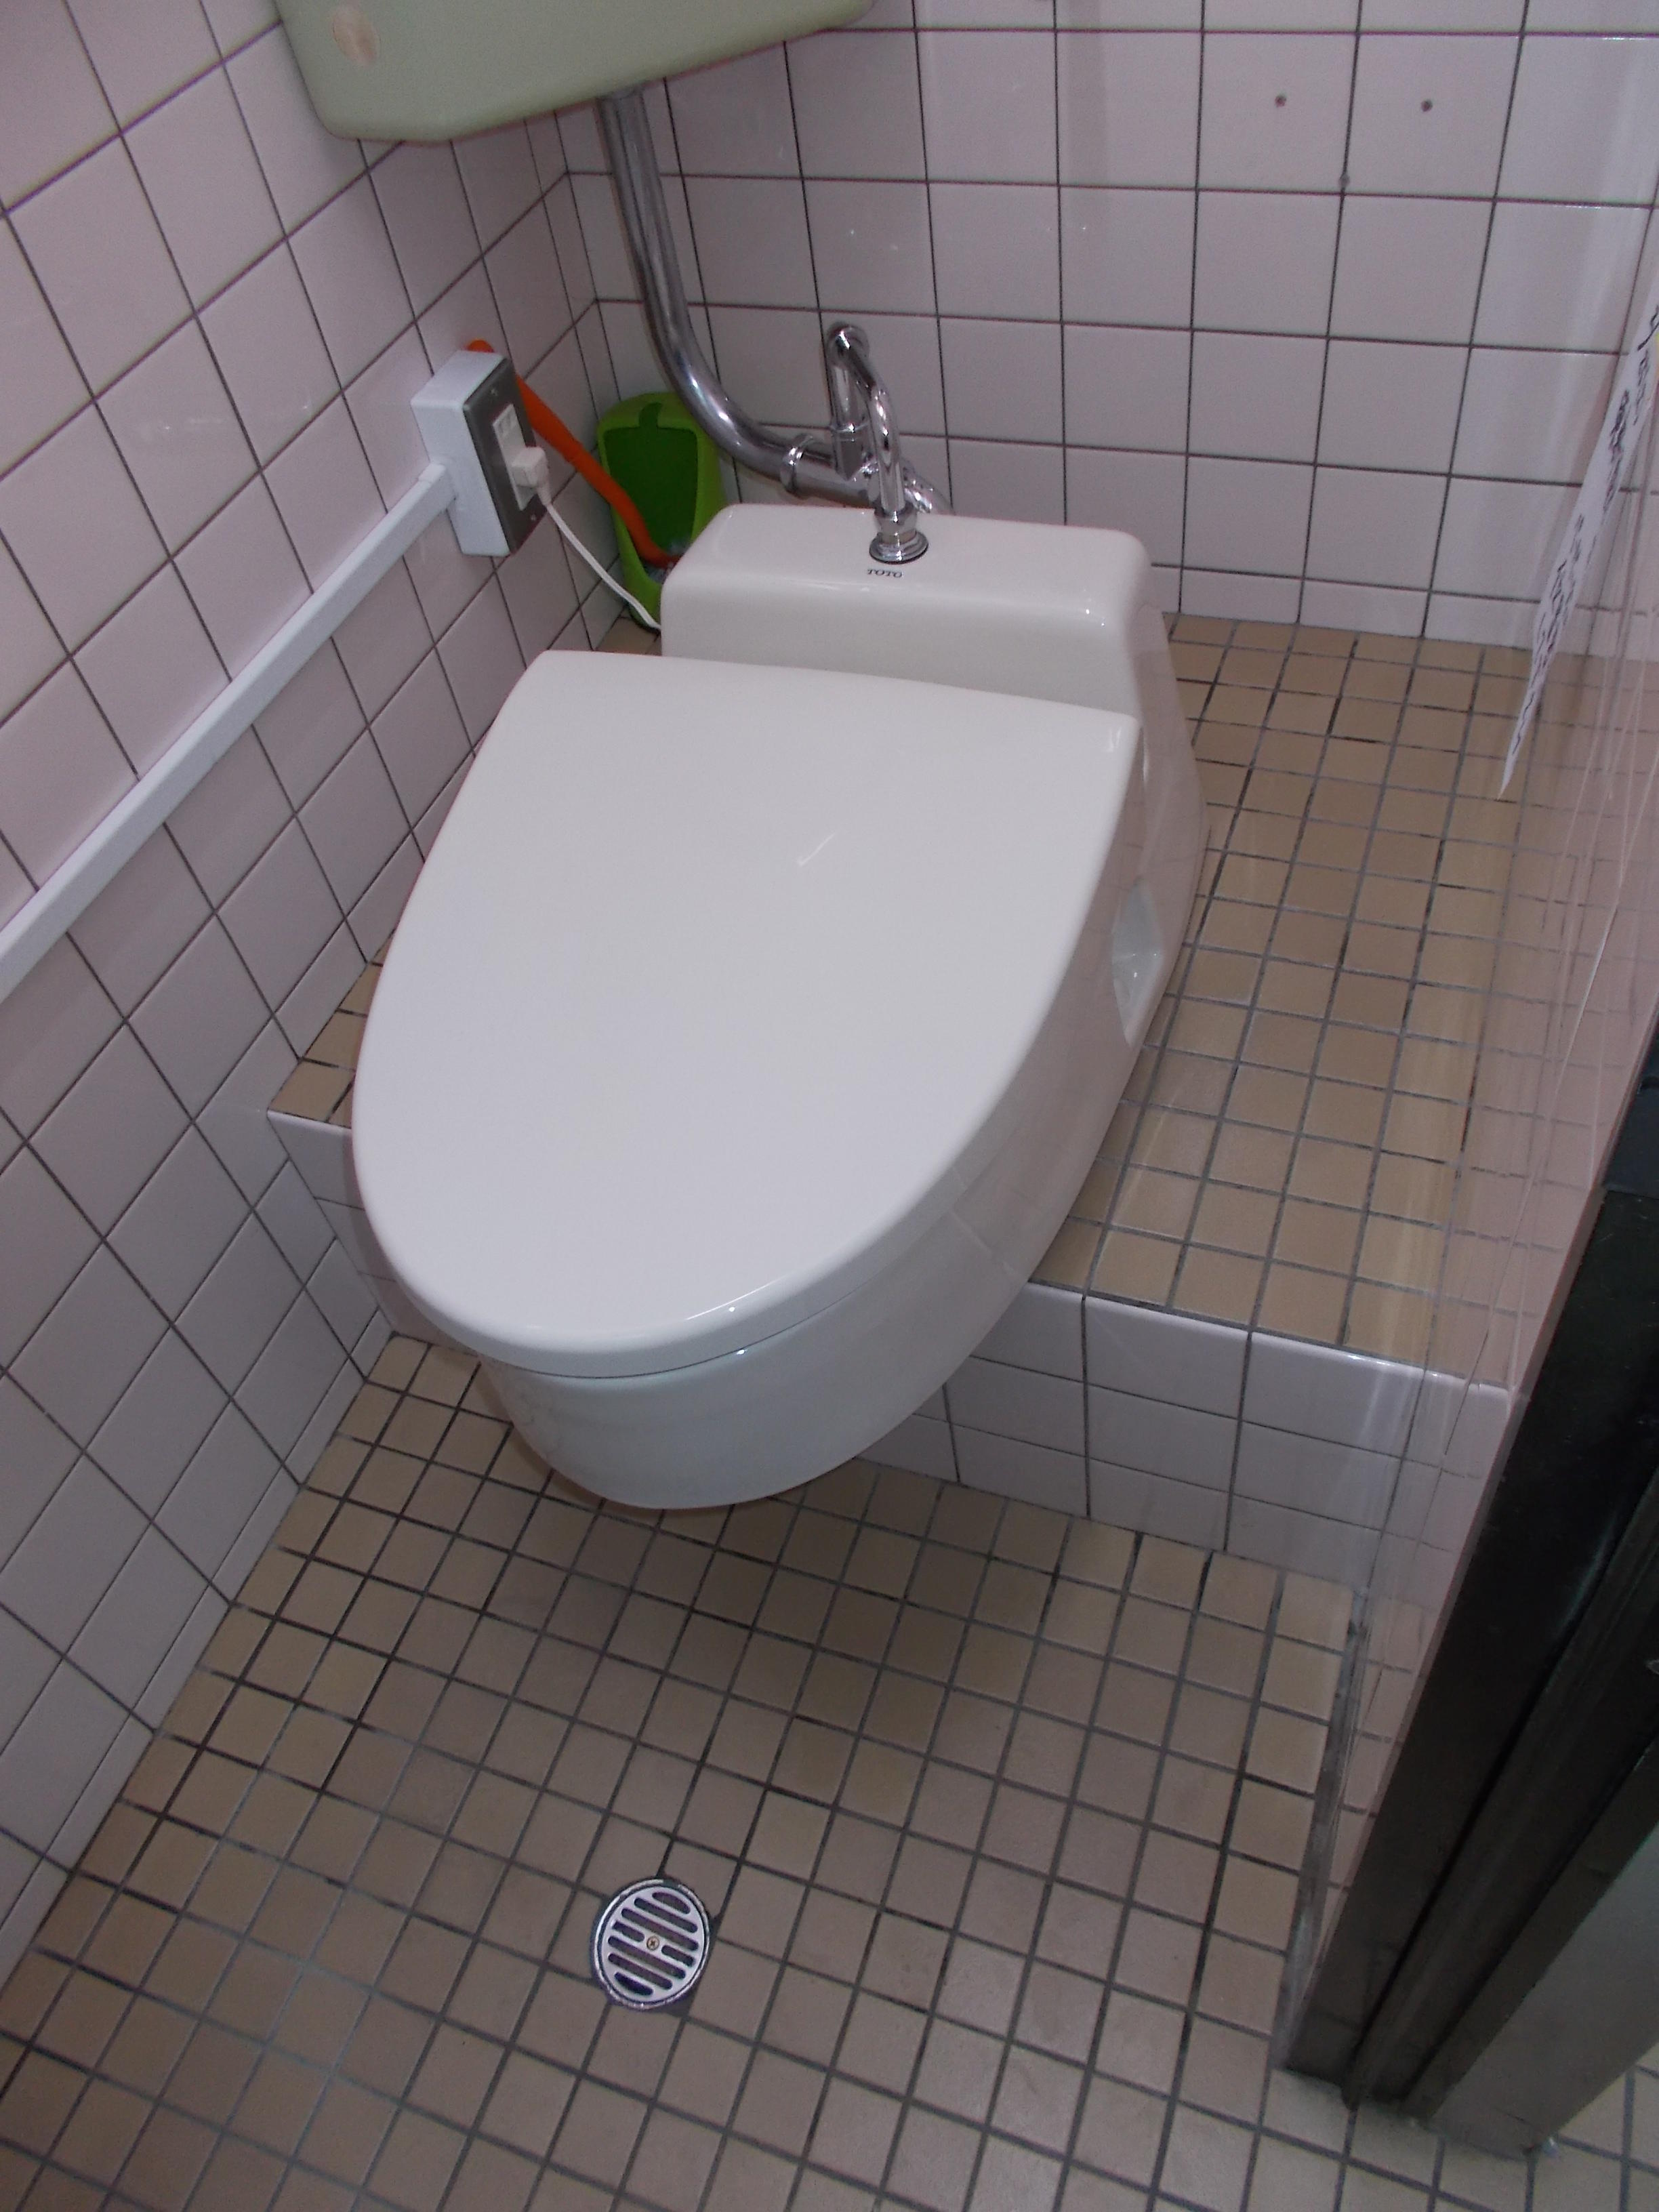 K社様。和式トイレを簡易洋式トイレにされた事例です。